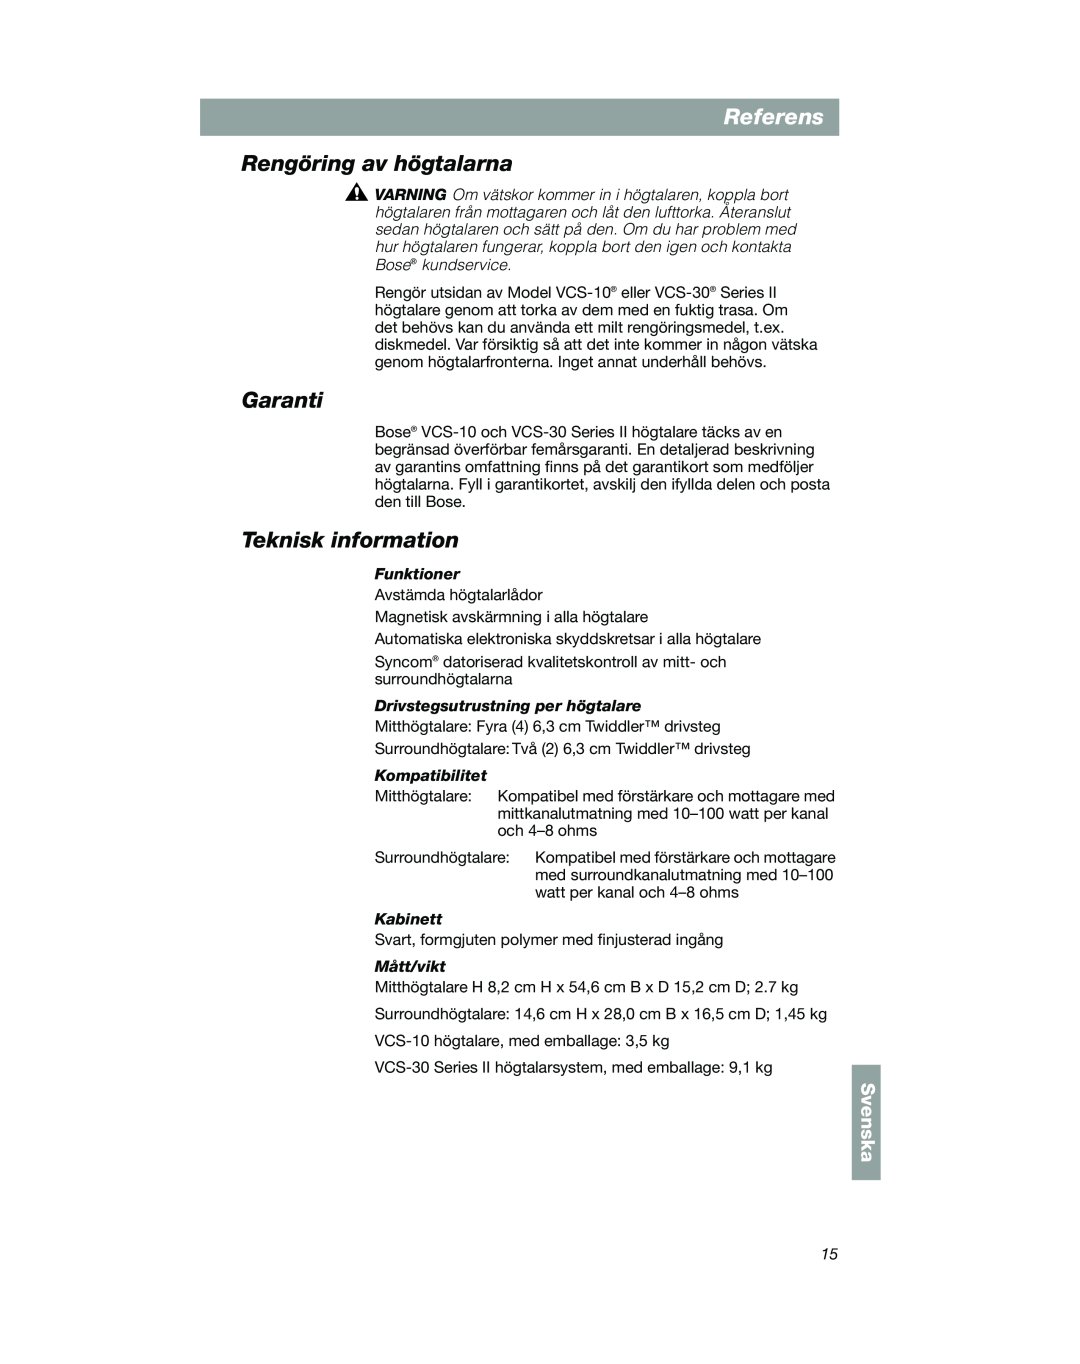 Bose VCS-10 manual Rengöring av högtalarna, Garanti, Teknisk information, Referens, Svenska 